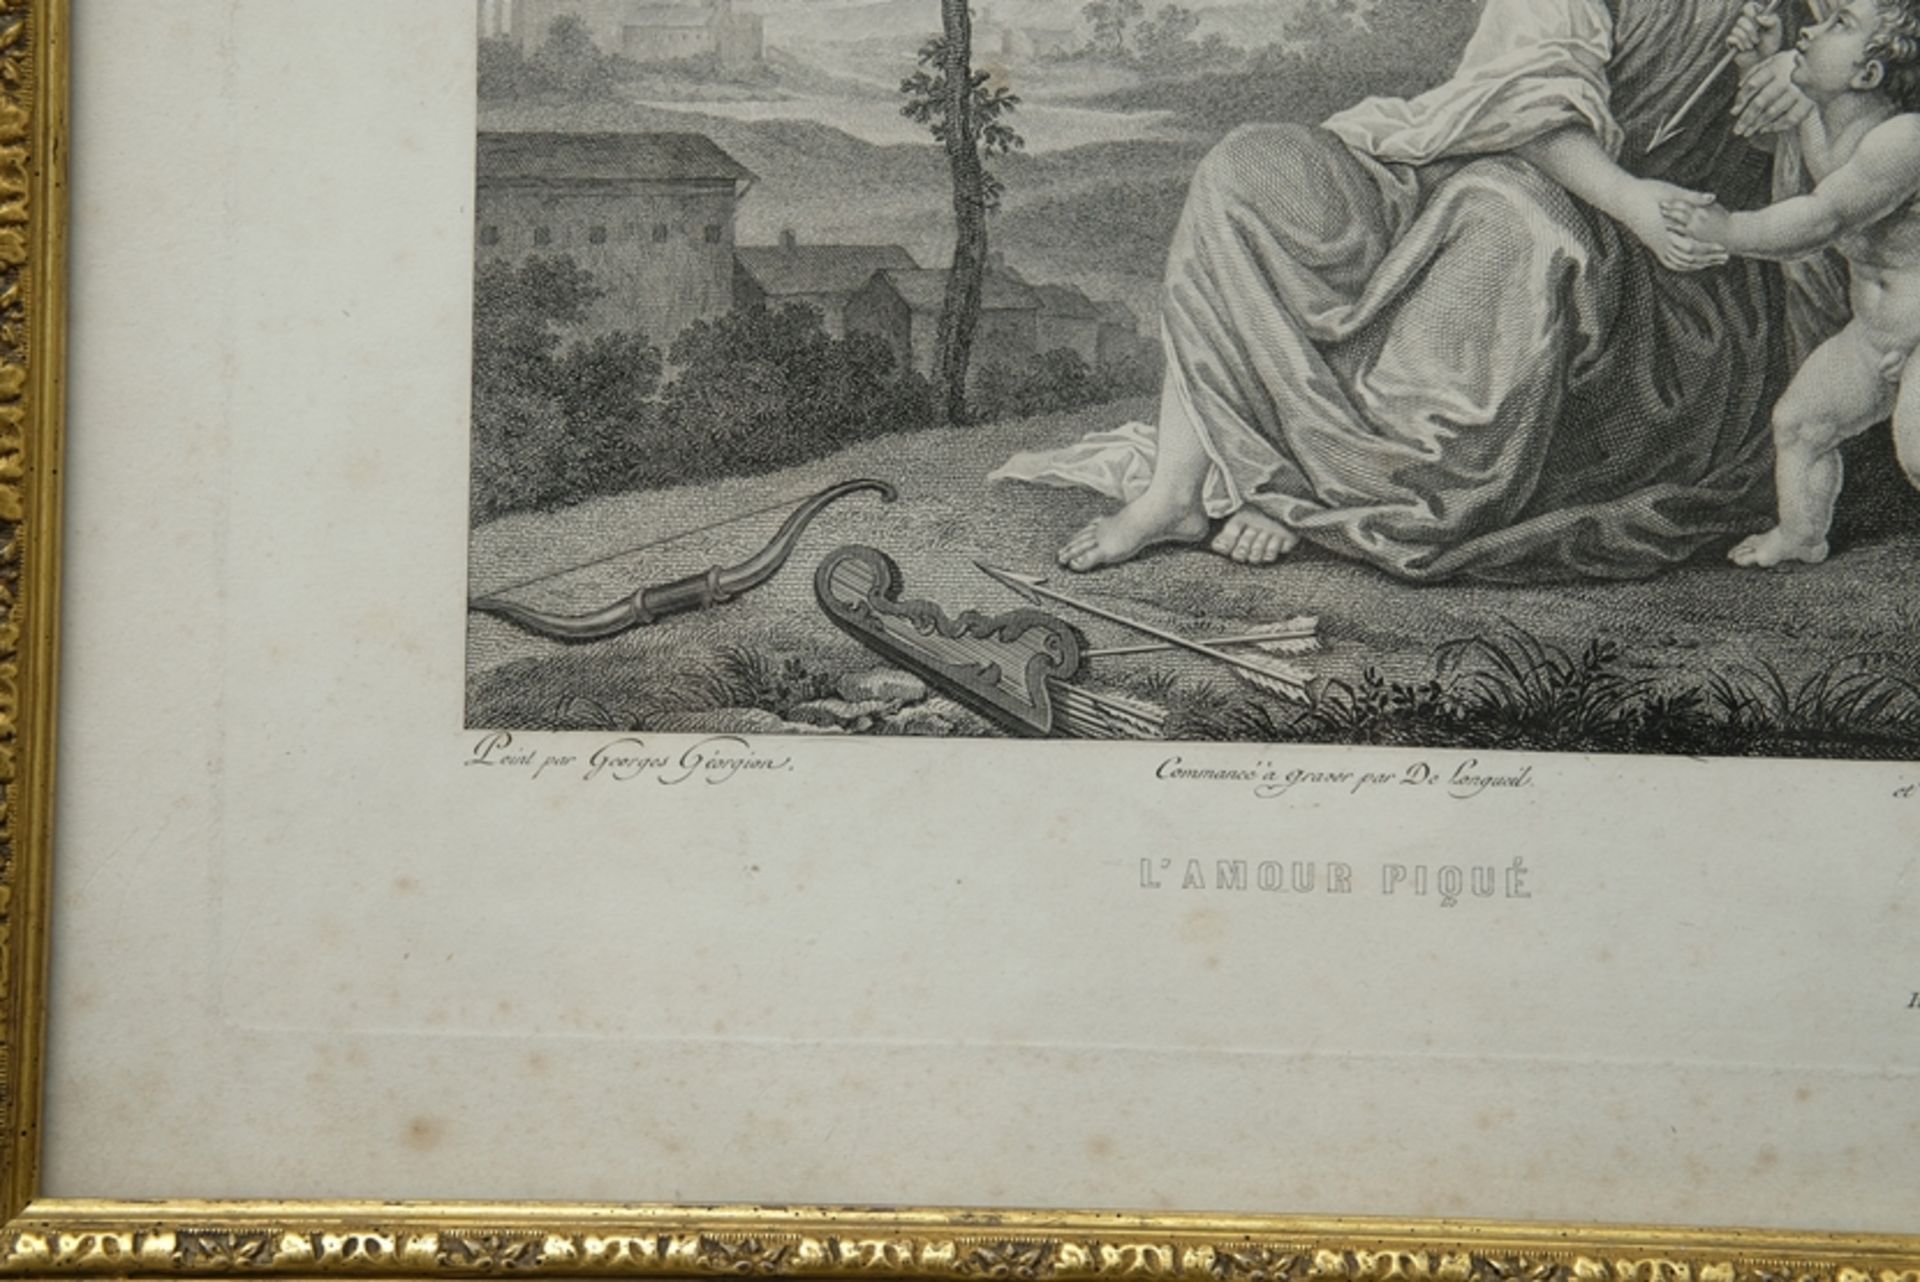 "L'Amour piqué", ca. 1786-1808, on paper. Inscribed "Peint par Georges Géorgion - Commencé à graver - Image 4 of 4